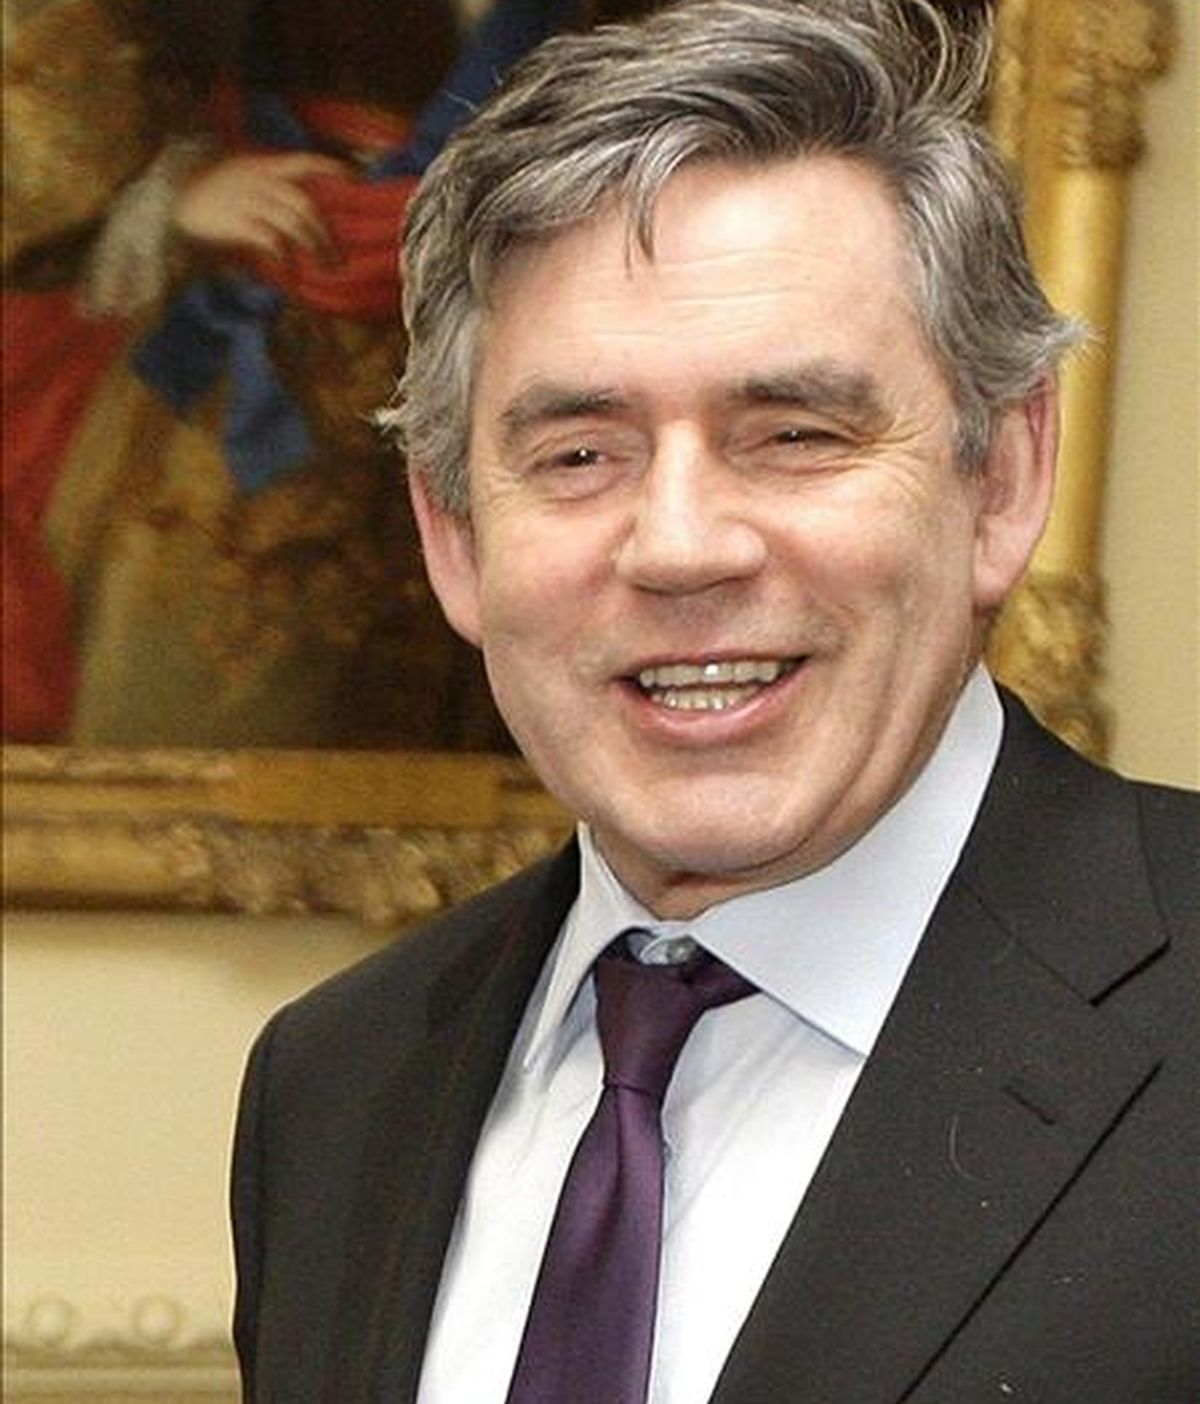 En la imagen, el primer ministro británico, Gordon Brown. EFE/Archivo